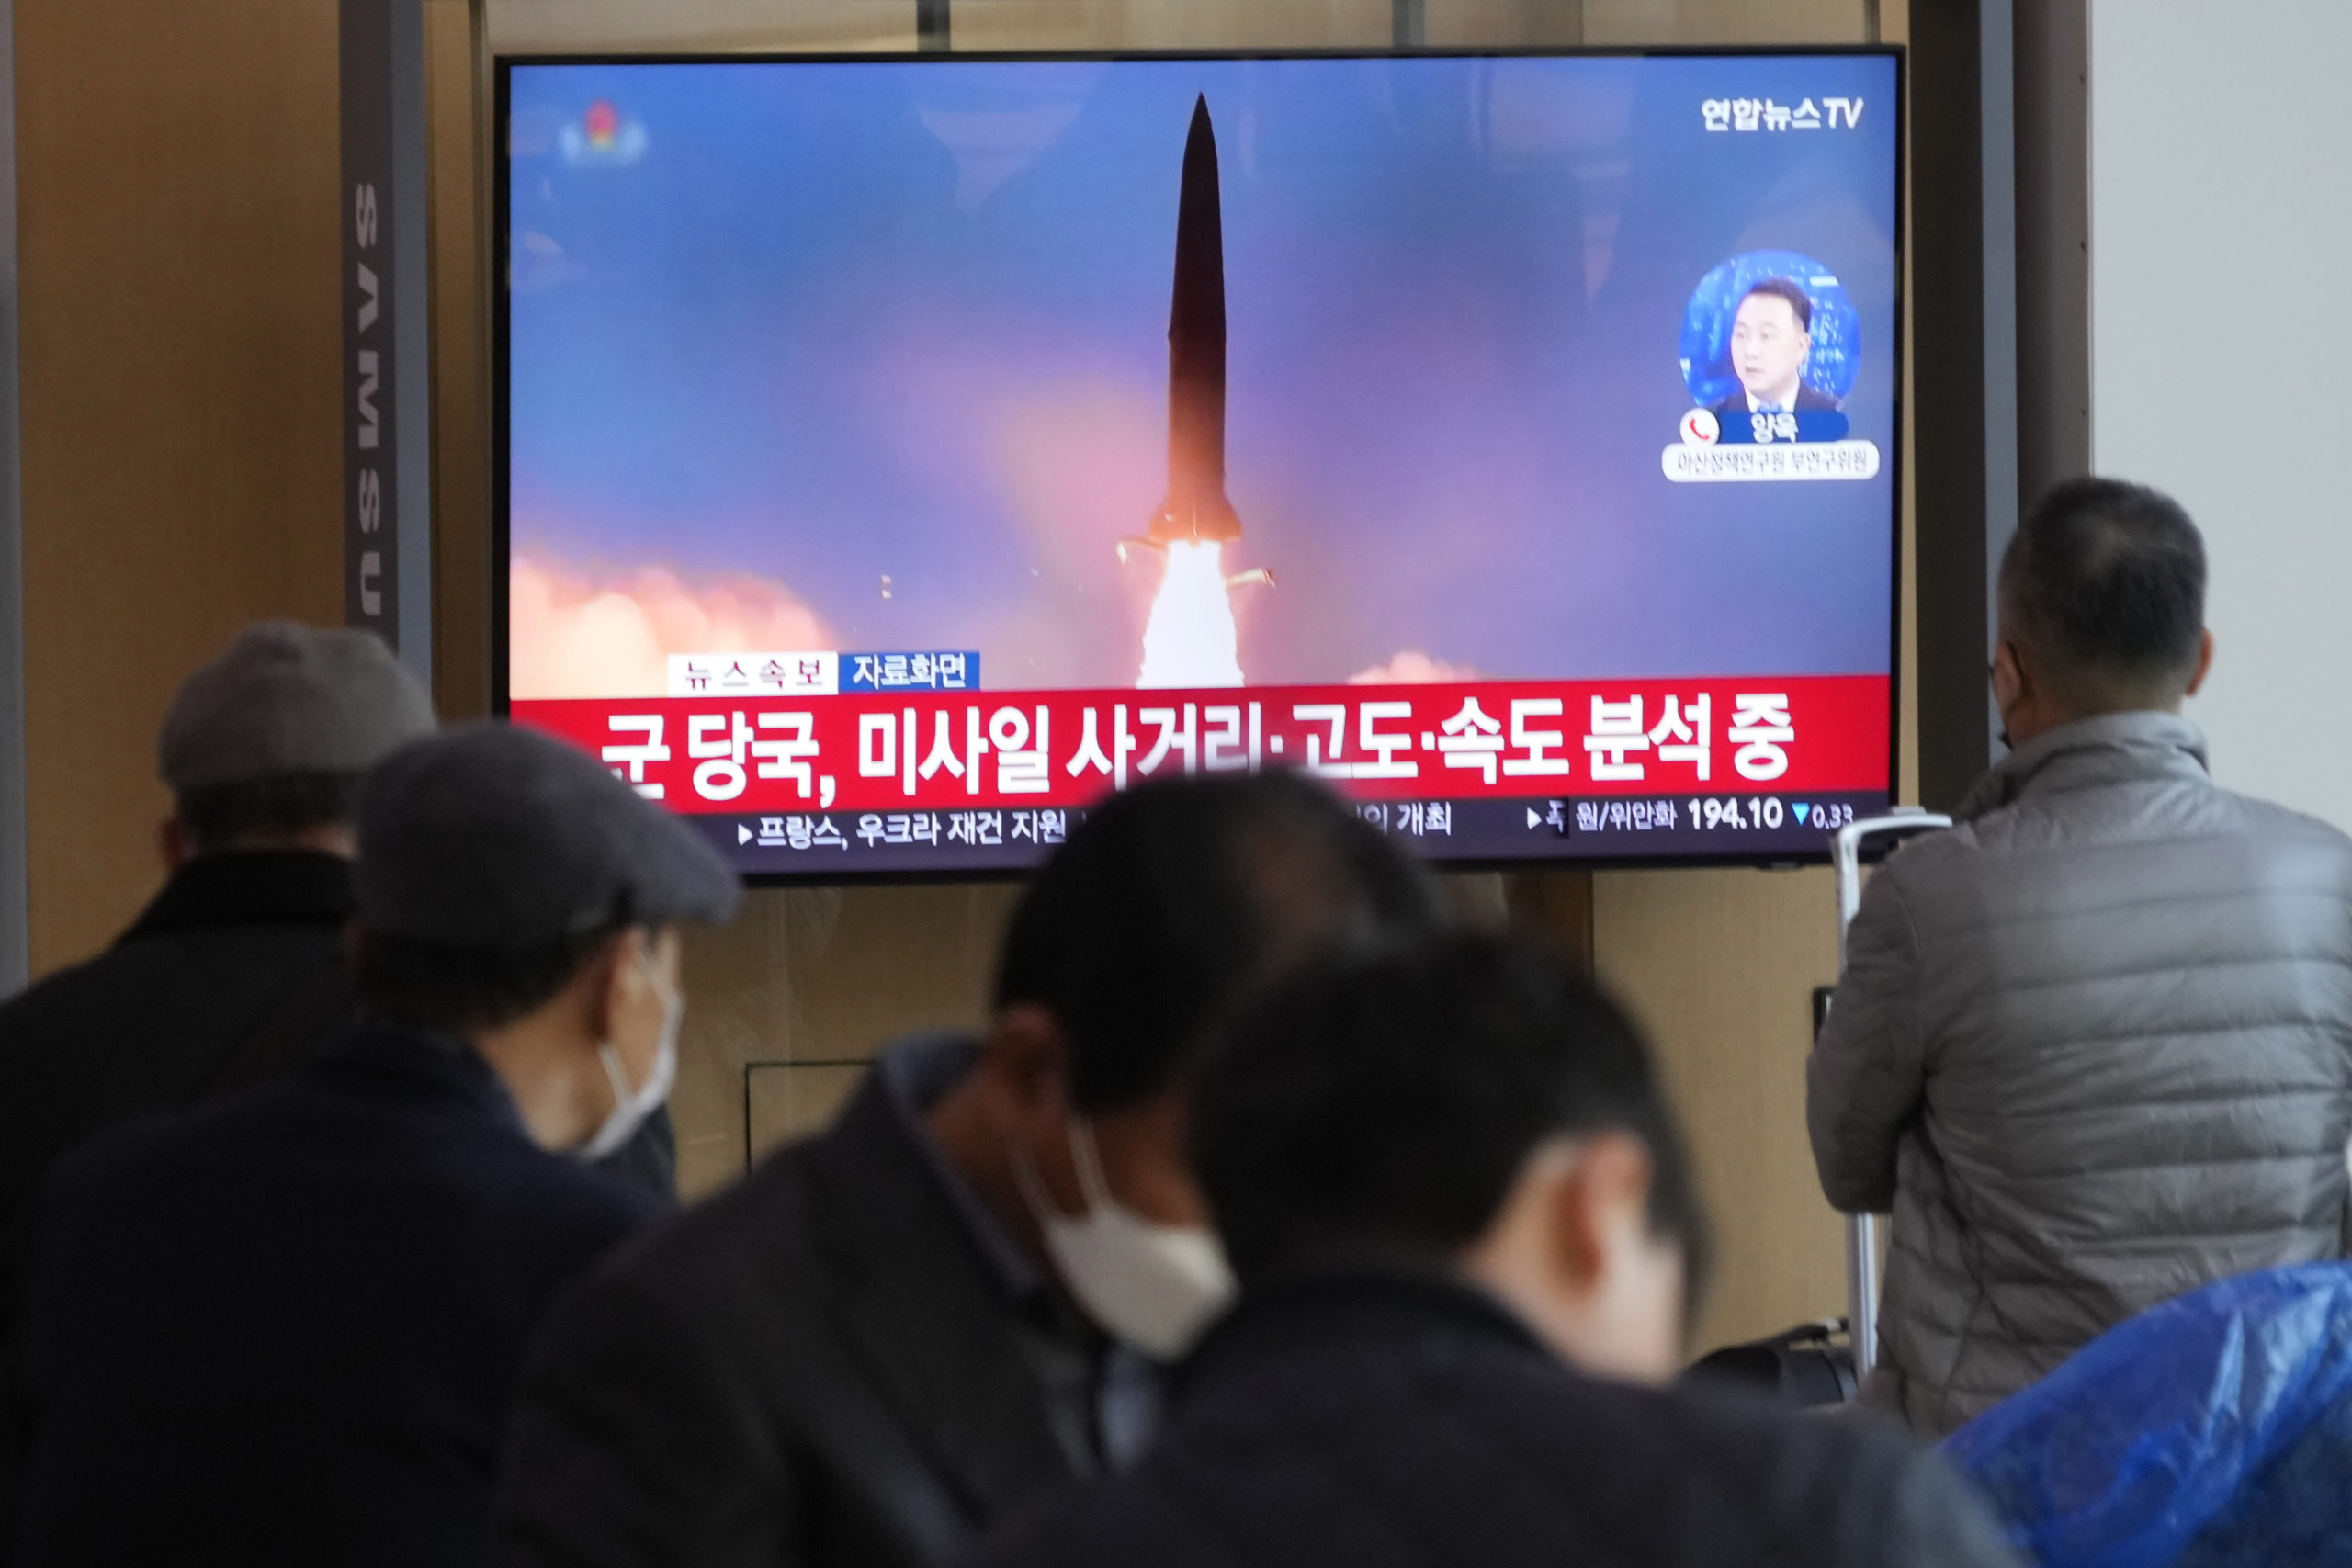 Β. Κορέα: Νέα εκτόξευση βαλλιστικού πυραύλου που πέρασε πάνω από την Ιαπωνία-Σε κλειστούς χώρους οι κάτοικοι 3 νομαρχιών